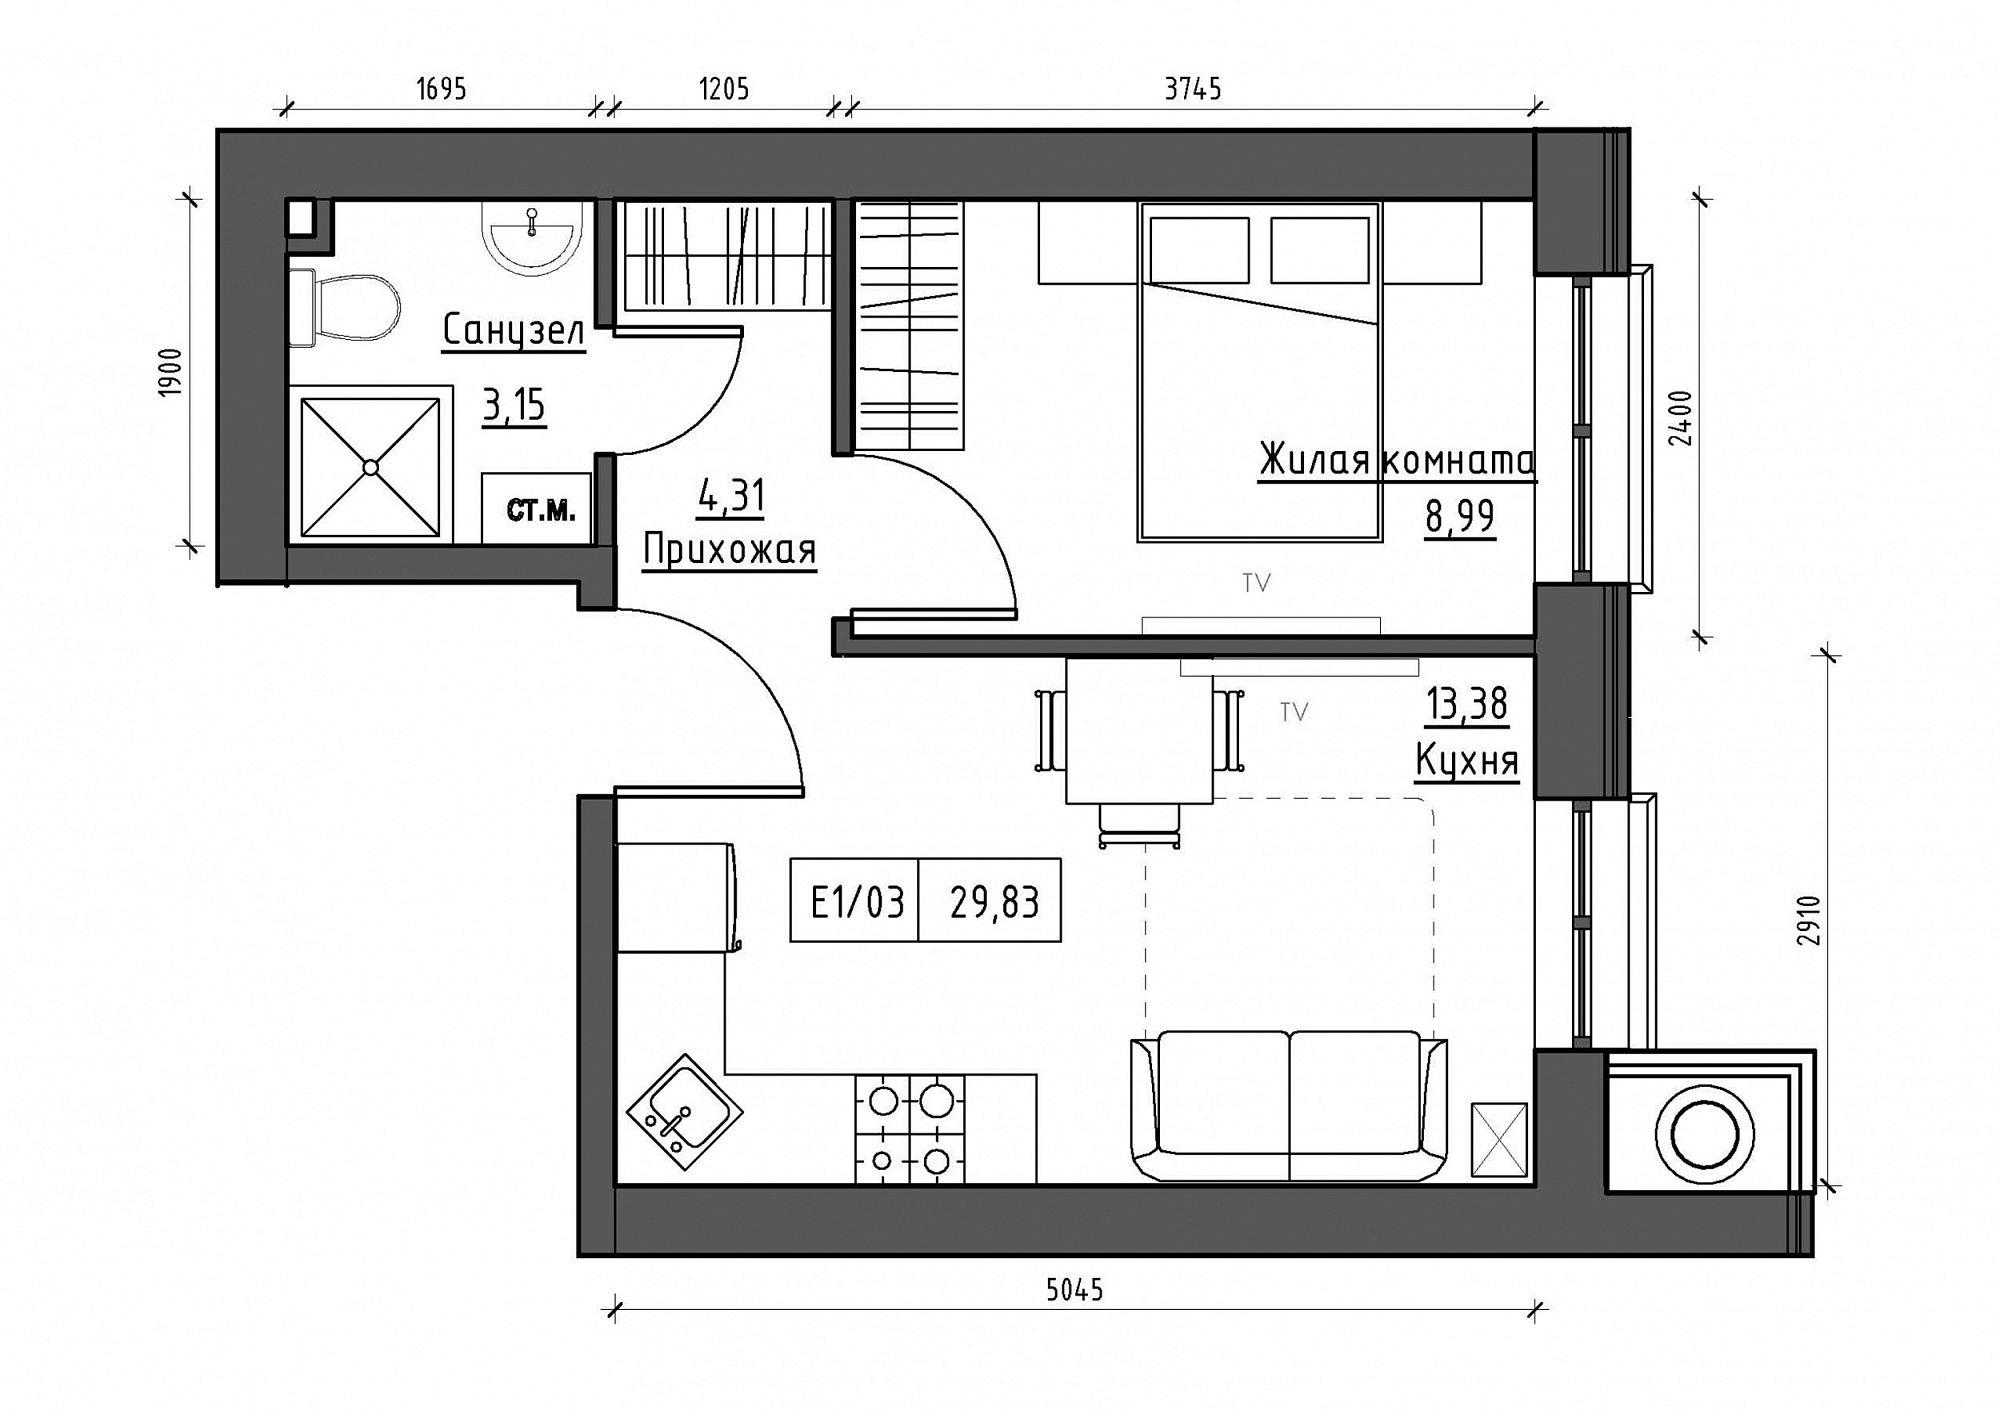 Планировка 1-к квартира площей 29.83м2, KS-012-01/0013.